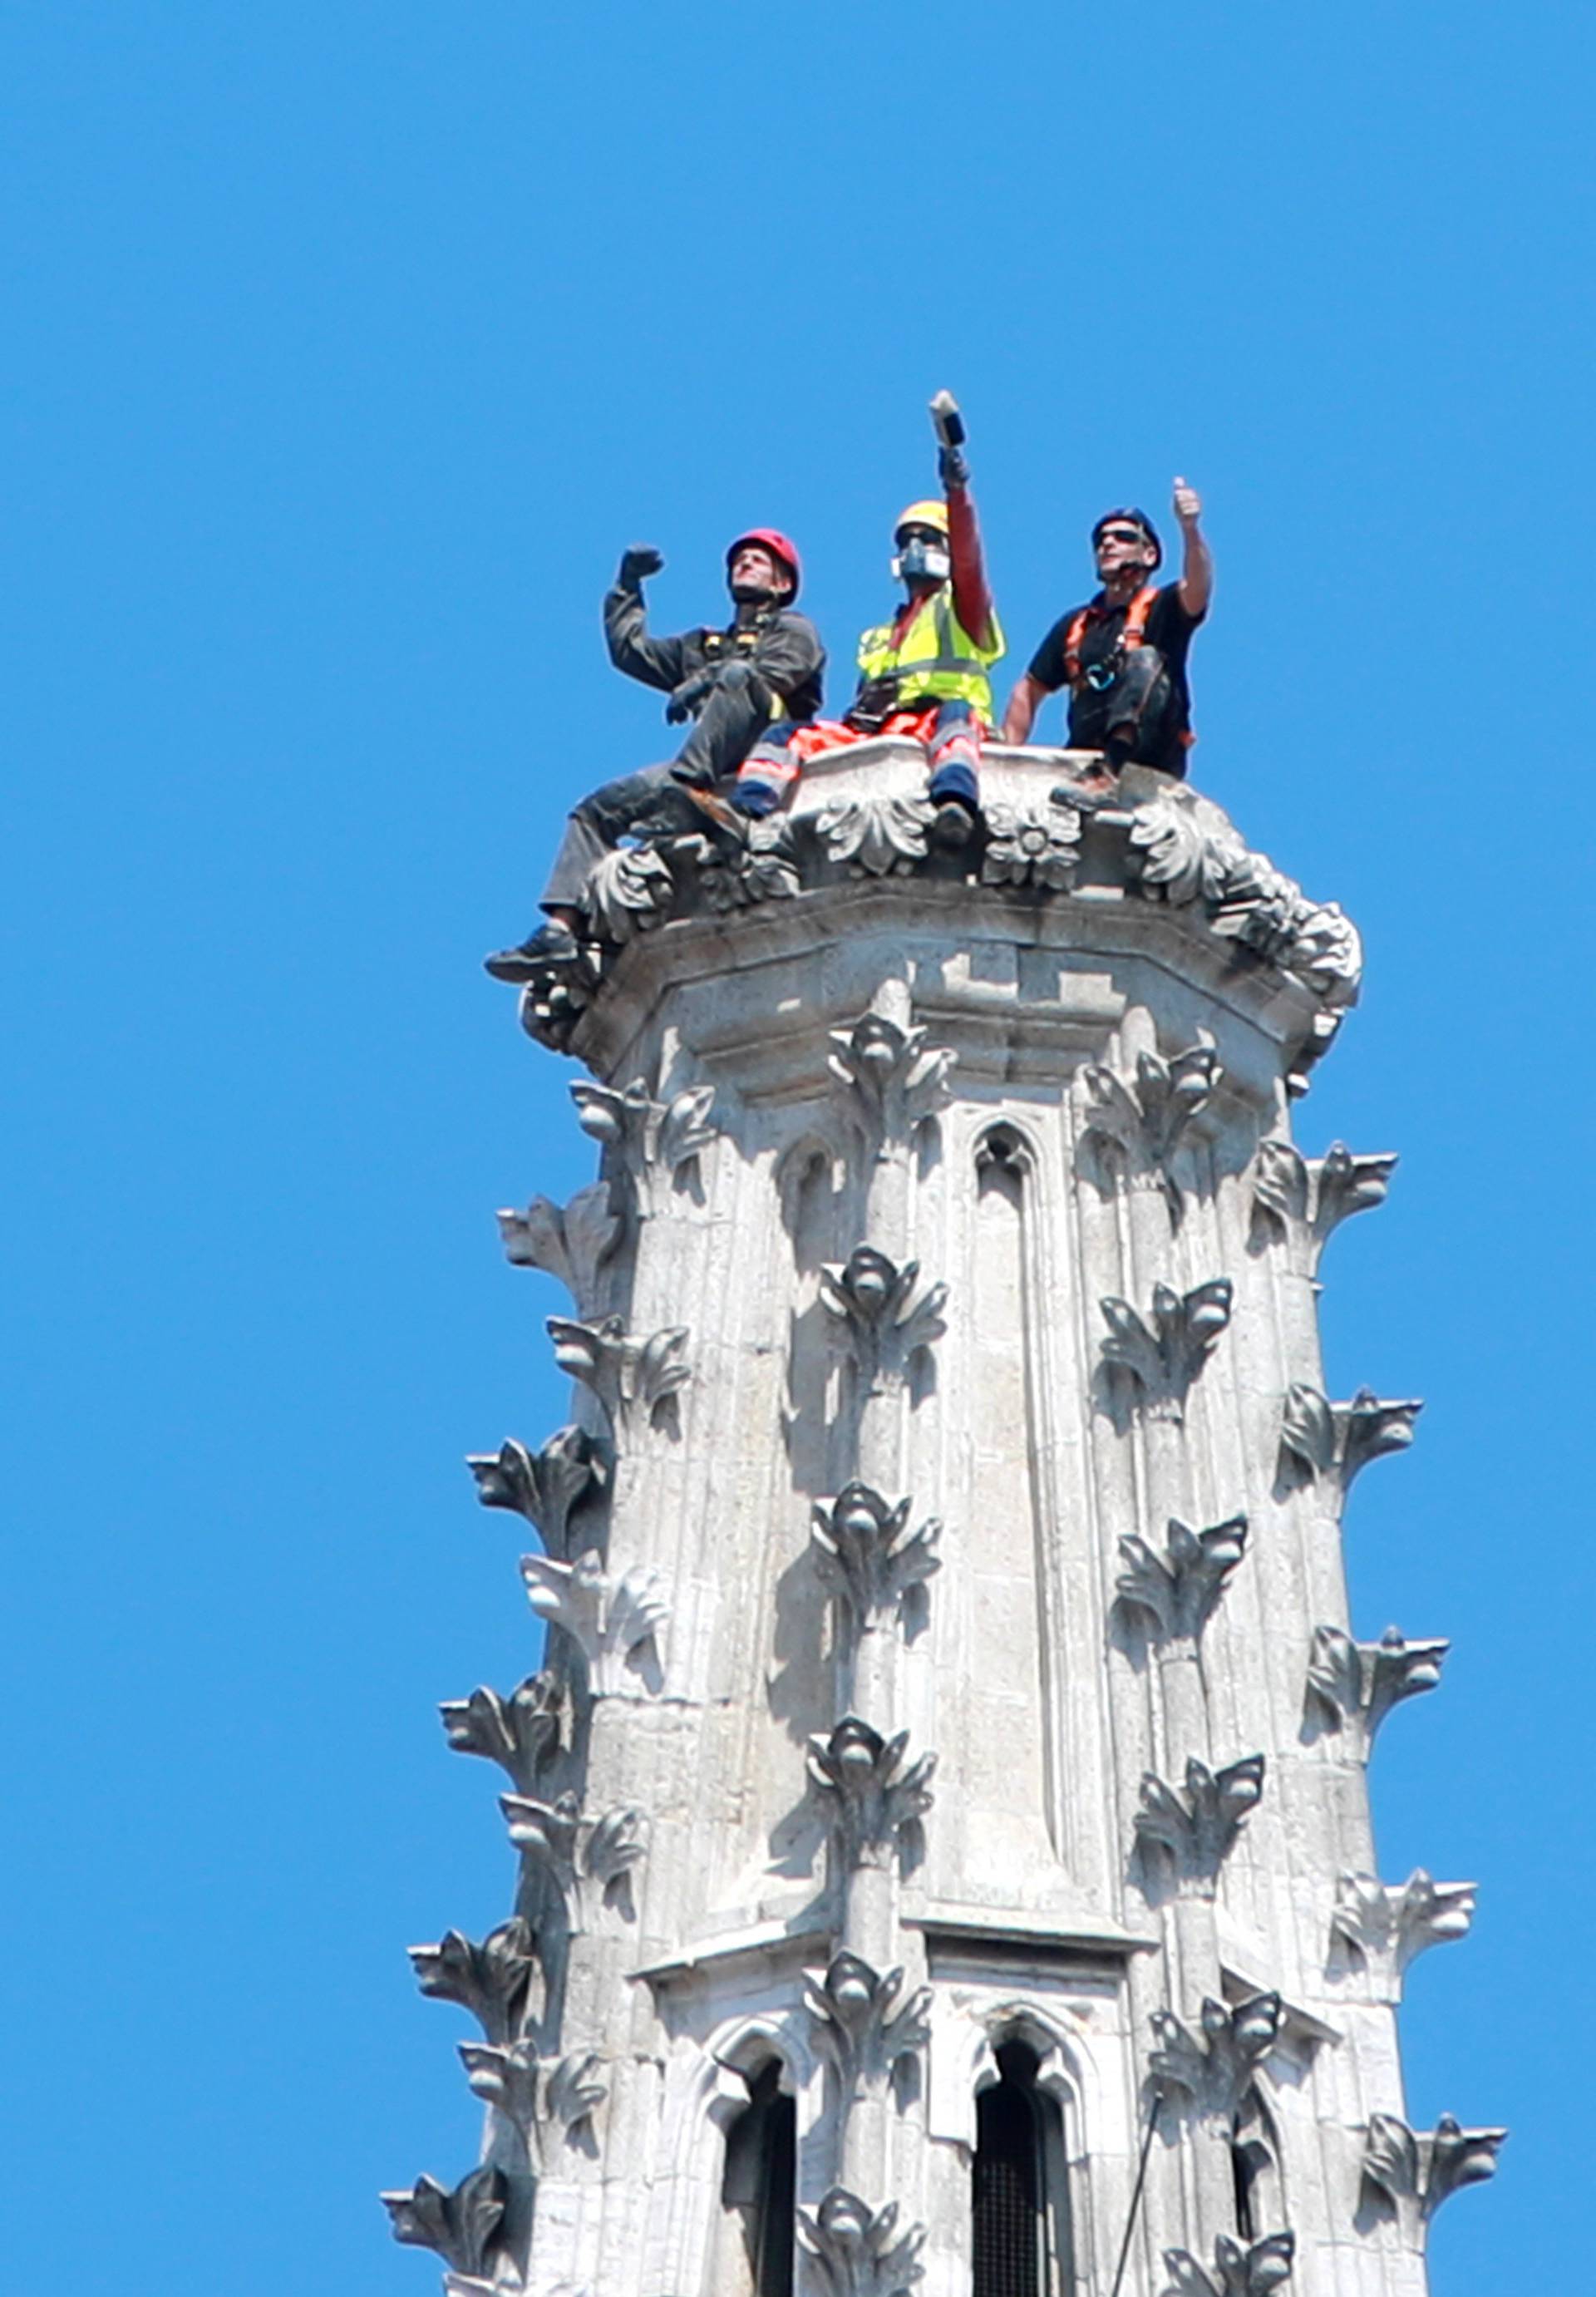 Zagreb: Alpinisti na vrhu katedrale prilegli i snimili pokoju fotografiju za pamćenje